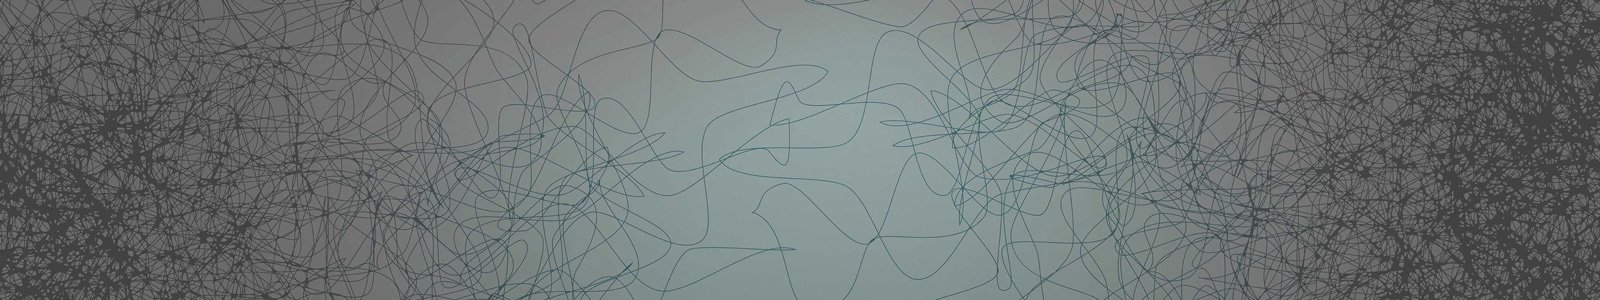 №7310 - Хаотично нарисованные линии